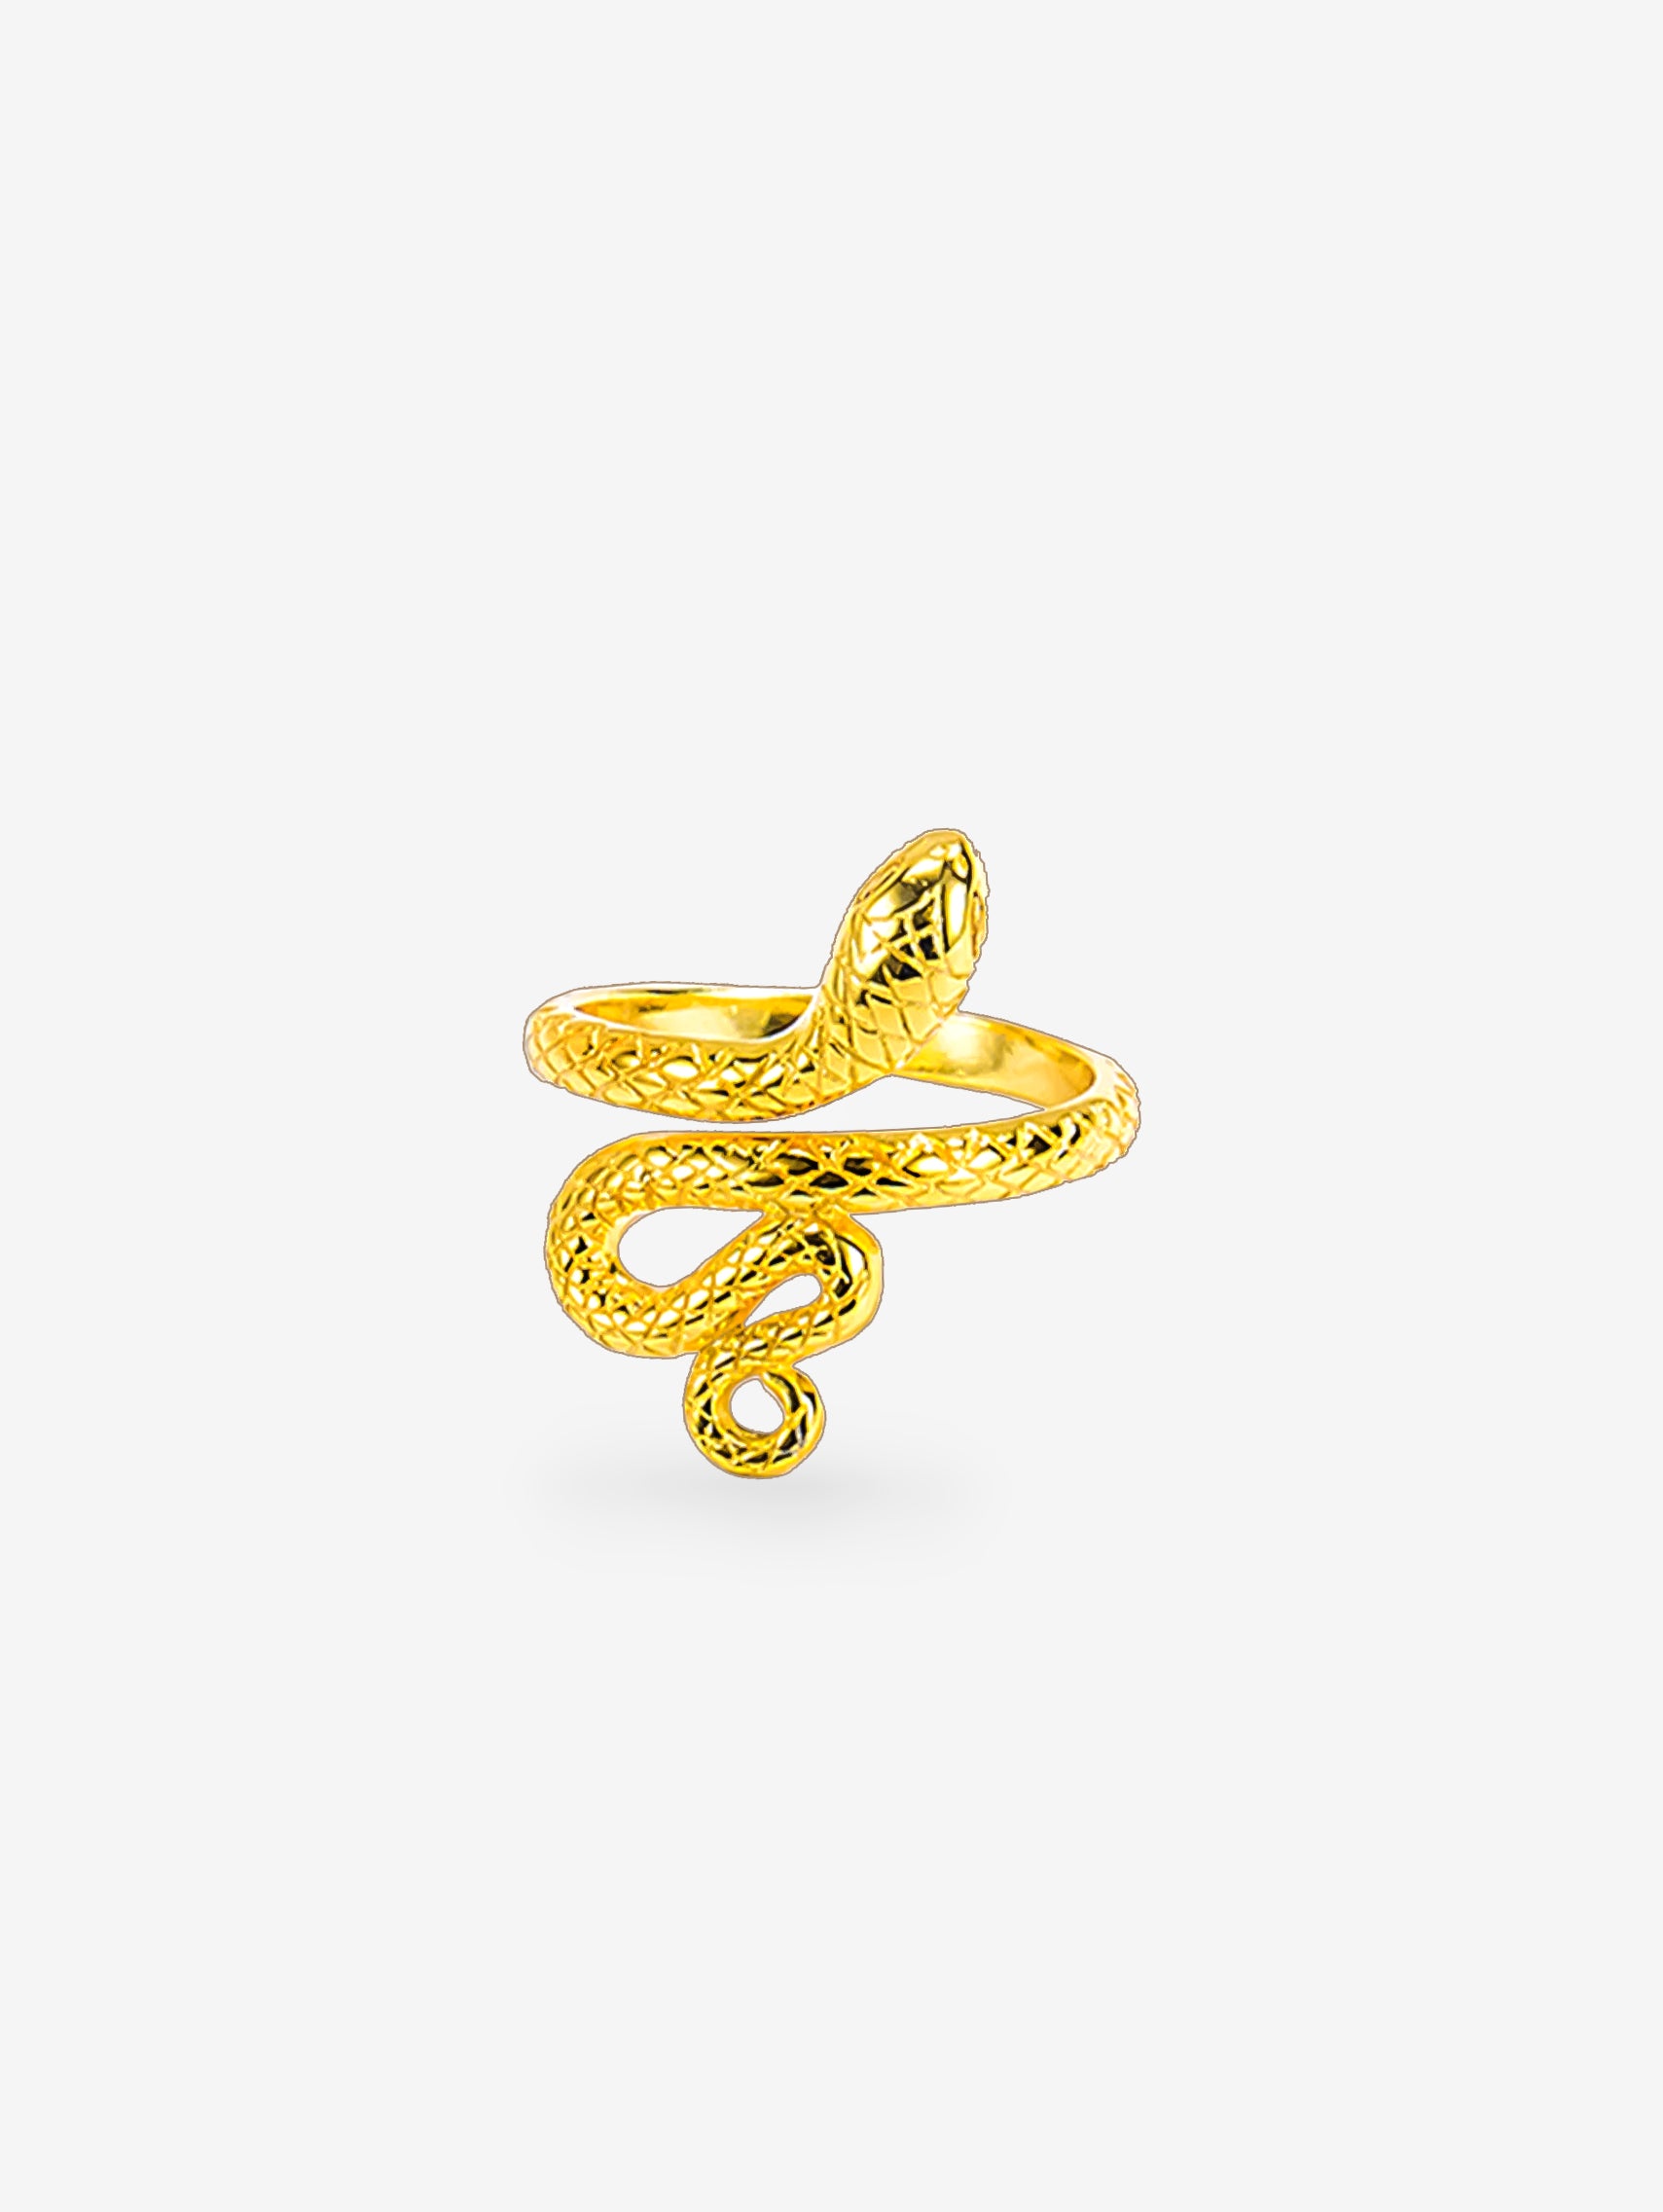 Gold Snake Ring - Adjustable